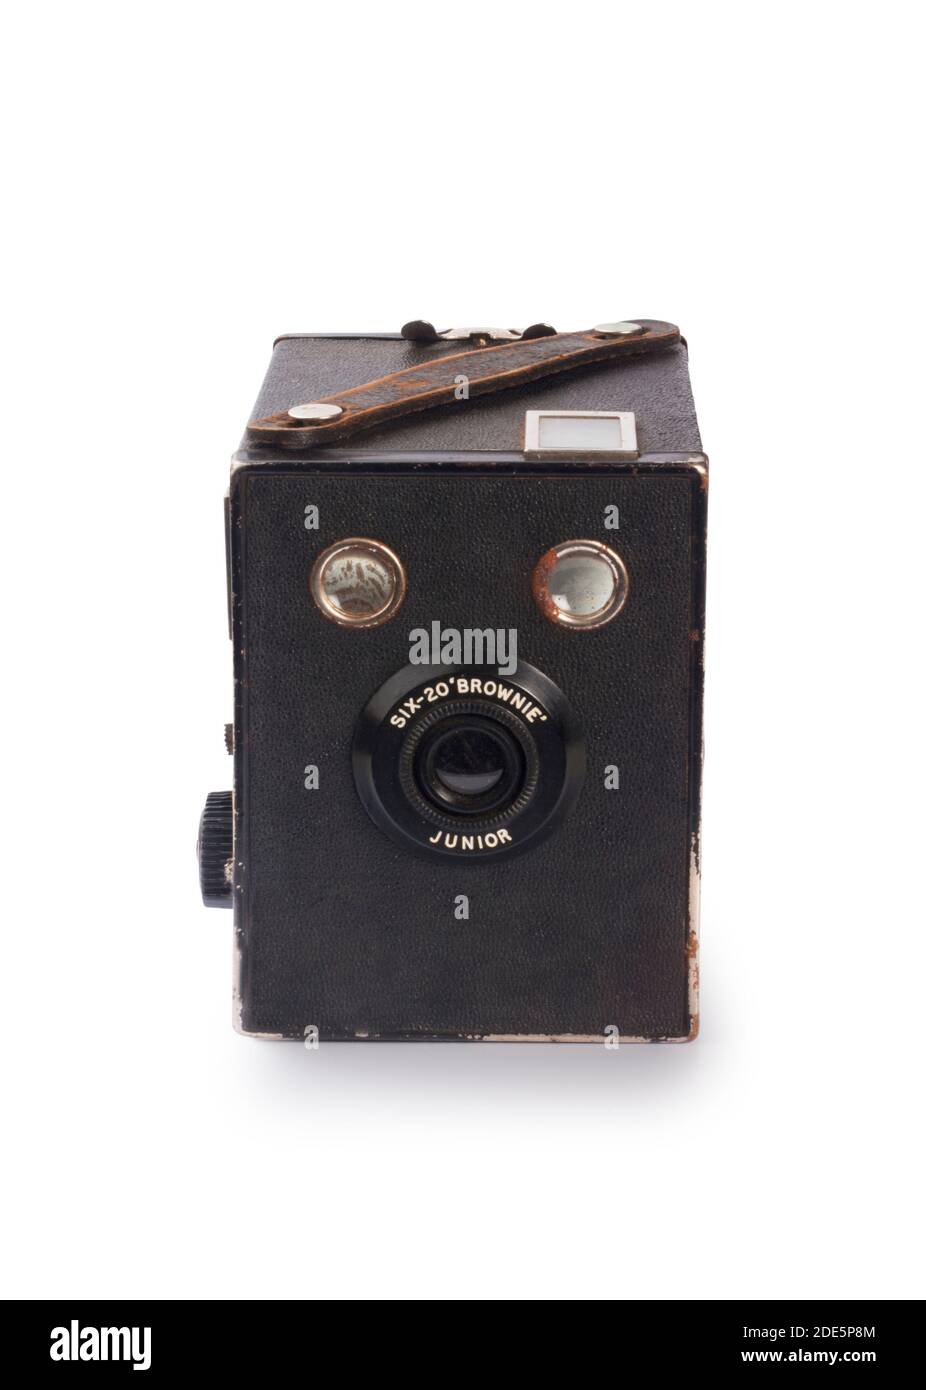 Foto de estudio de una cámara clásica Box Brownie Six Junior Corte contra  un fondo blanco - John Gollop Fotografía de stock - Alamy